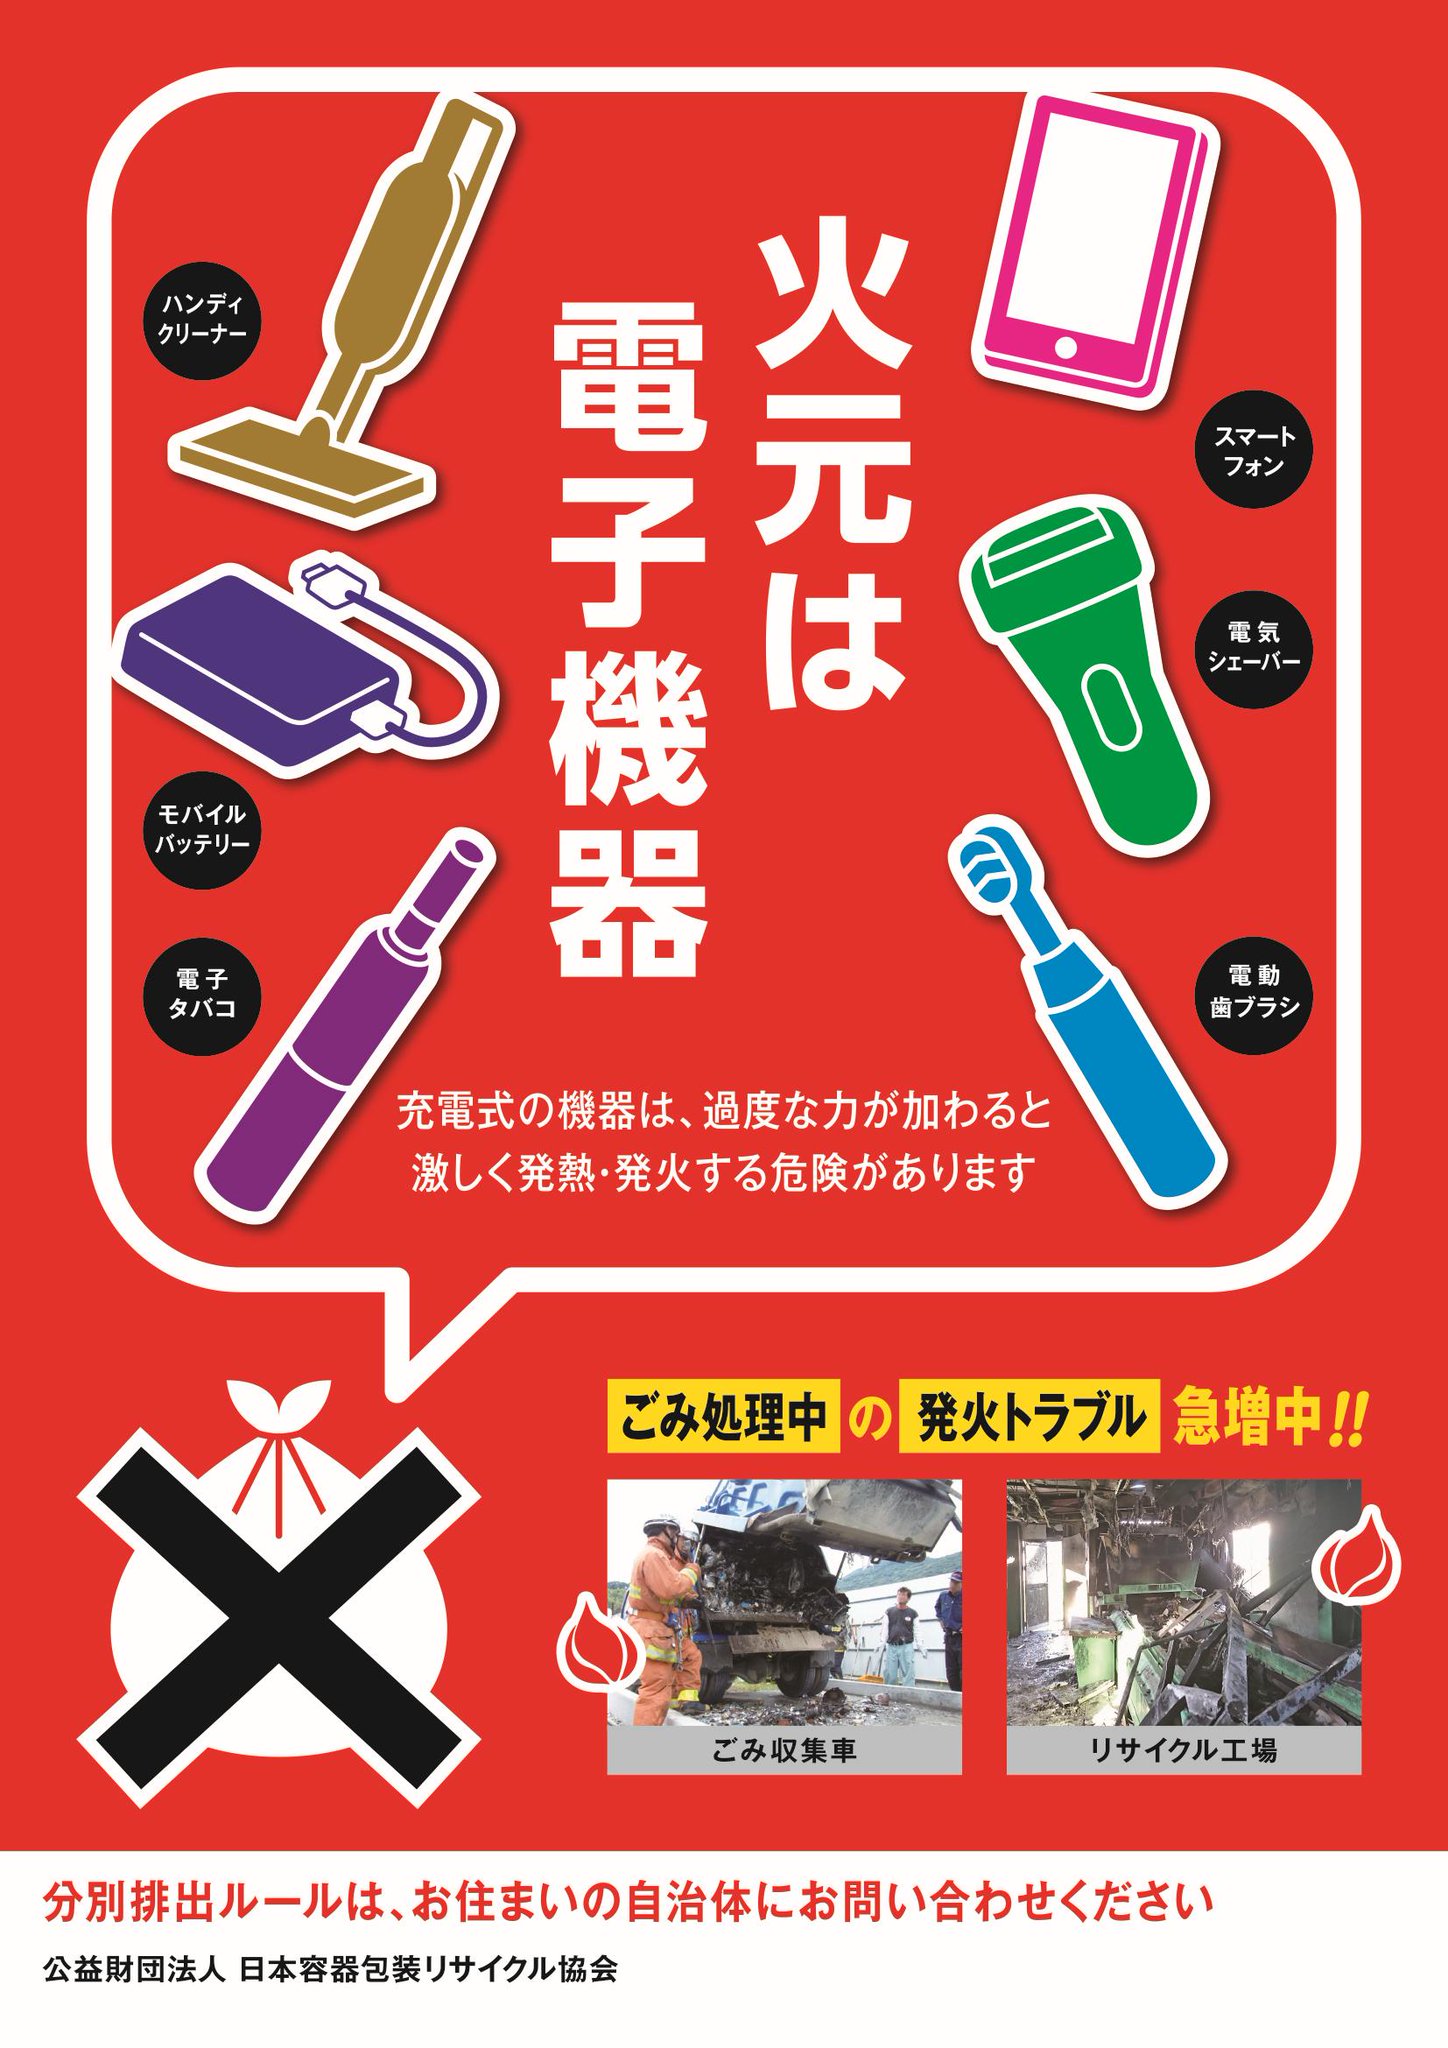 日本容器包装リサイクル協会 広報部 予告 協会では現在 プラごみにリチウムイオン電池を混入させないため 市民啓発ポスター チラシを準備しております 今秋予定 街中で見かけた際は ぜひご確認ください 詳しくは協会hpへ